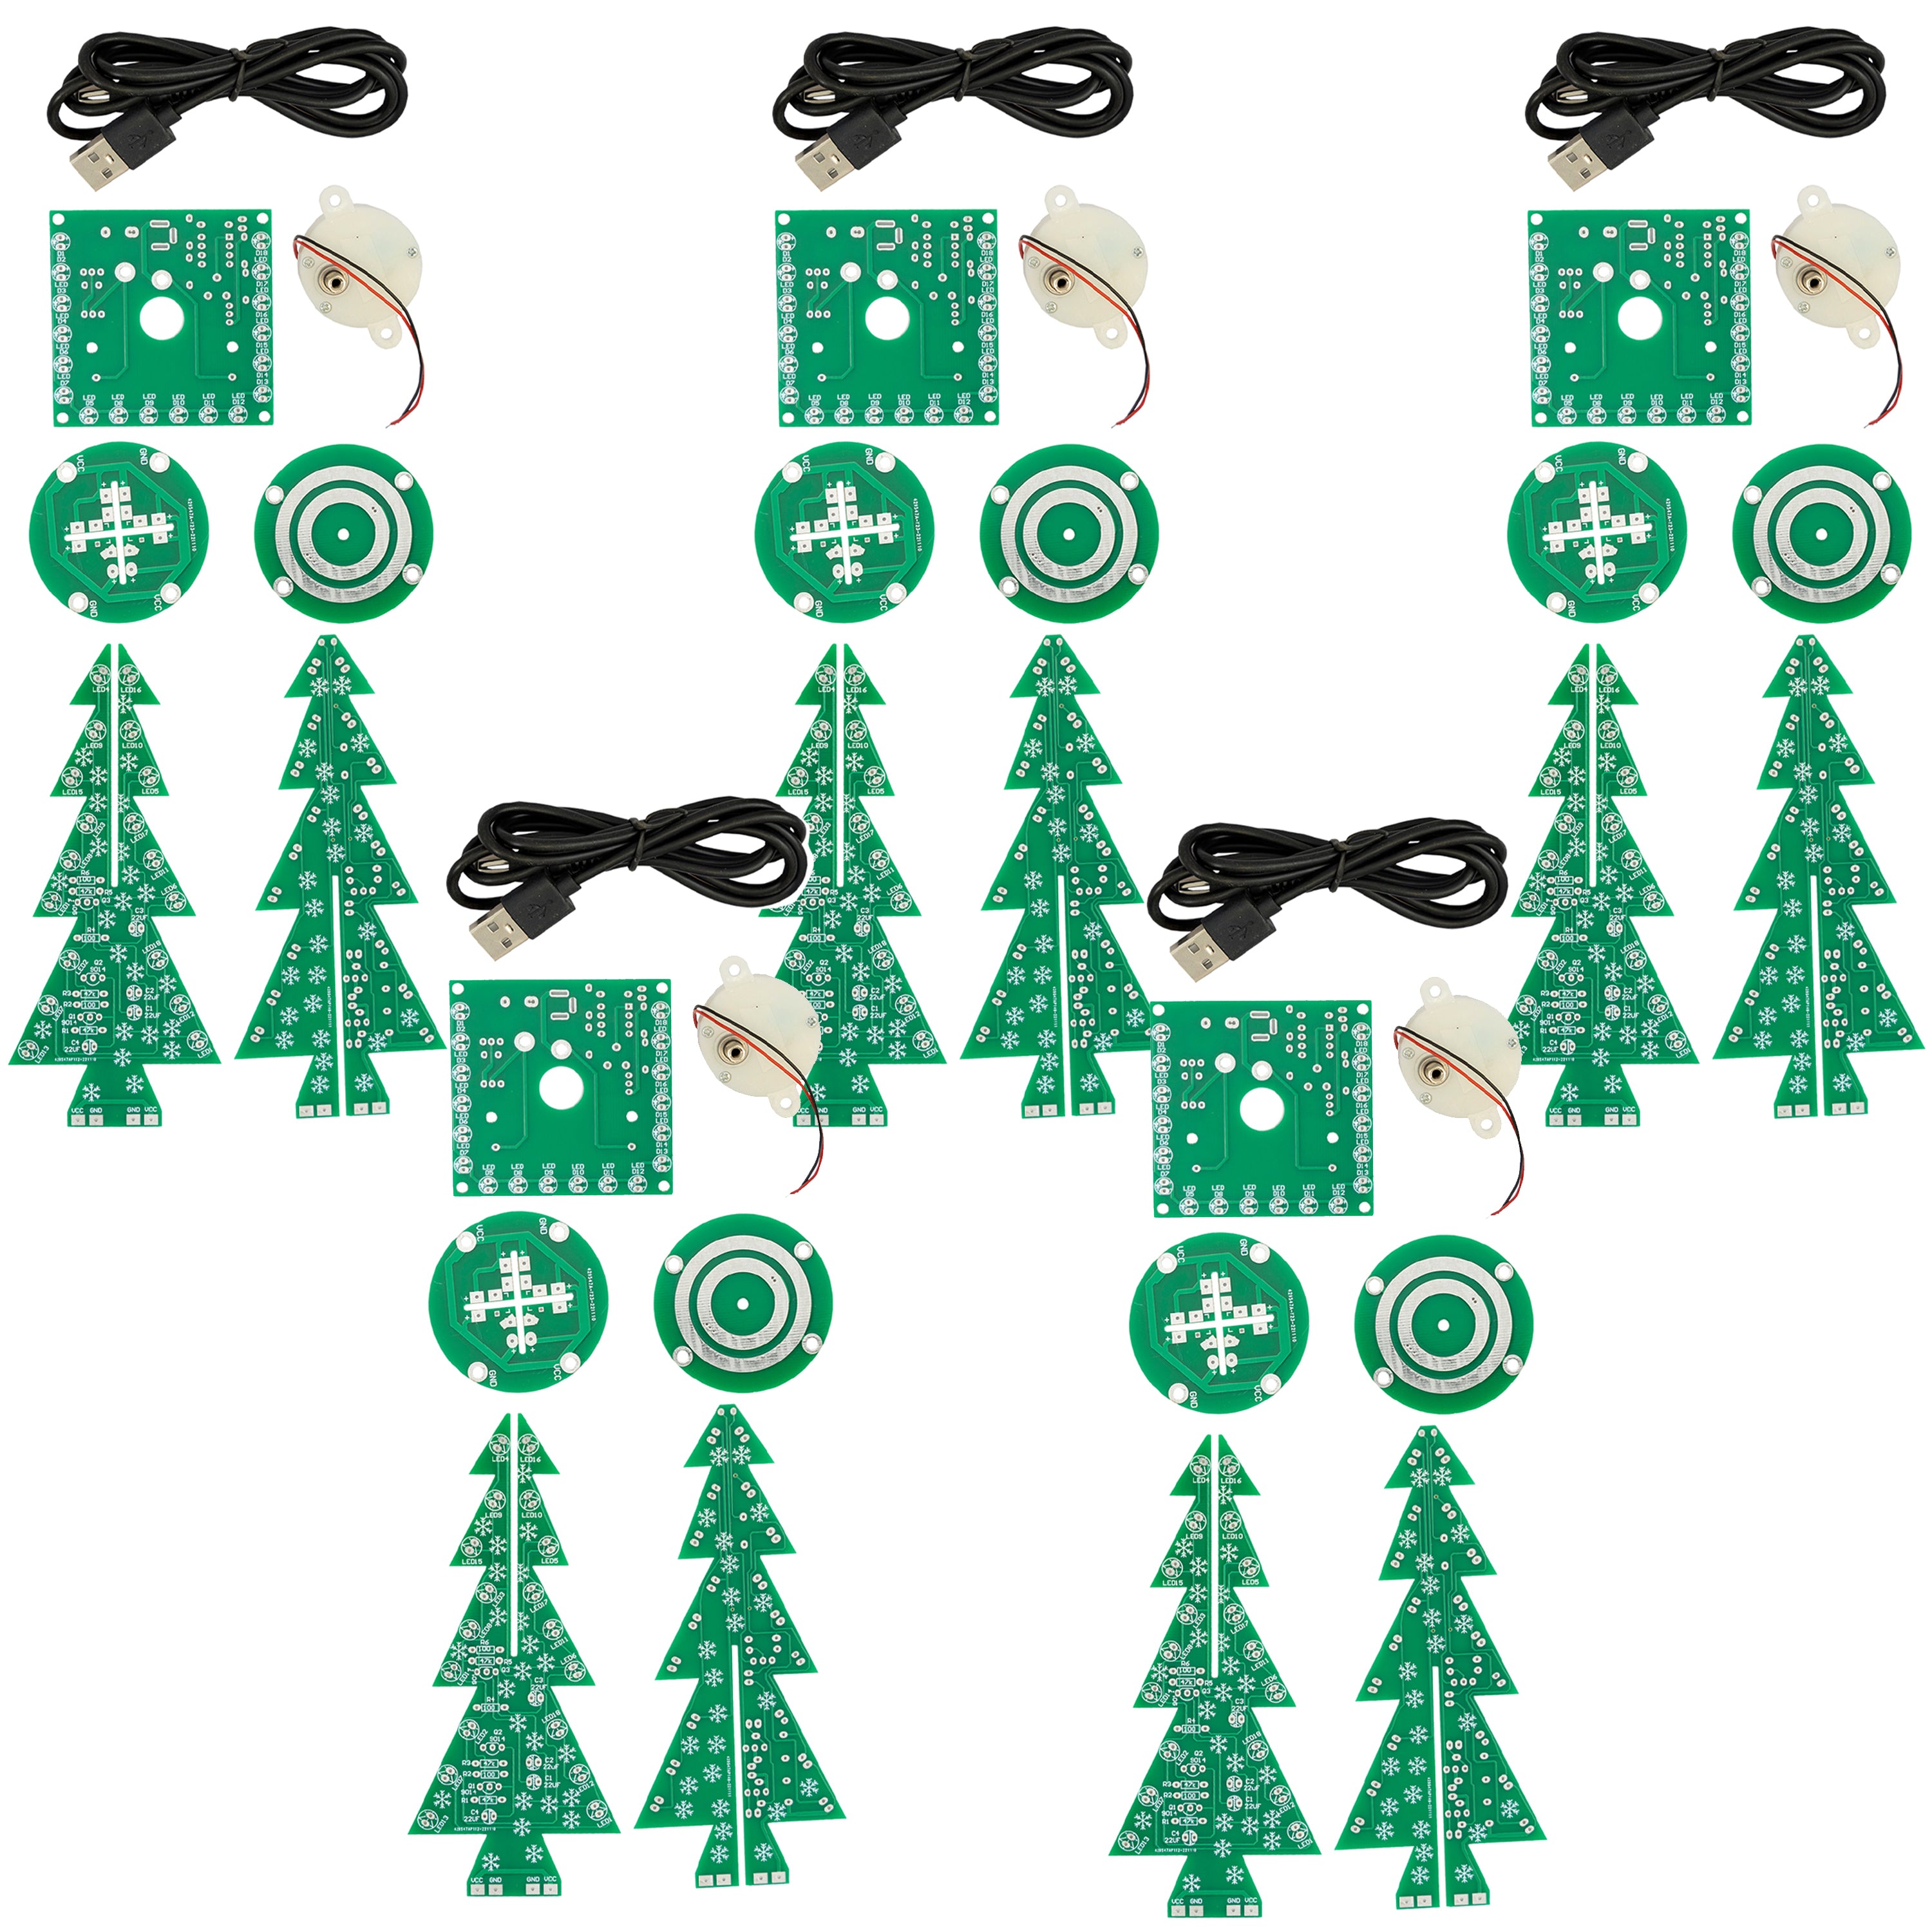 DIY LED kerstboom-set: kerstboom elektronicaset om te solderen - soldeerset voor een draaiende kerstboom met LED's en USB-aansluiting